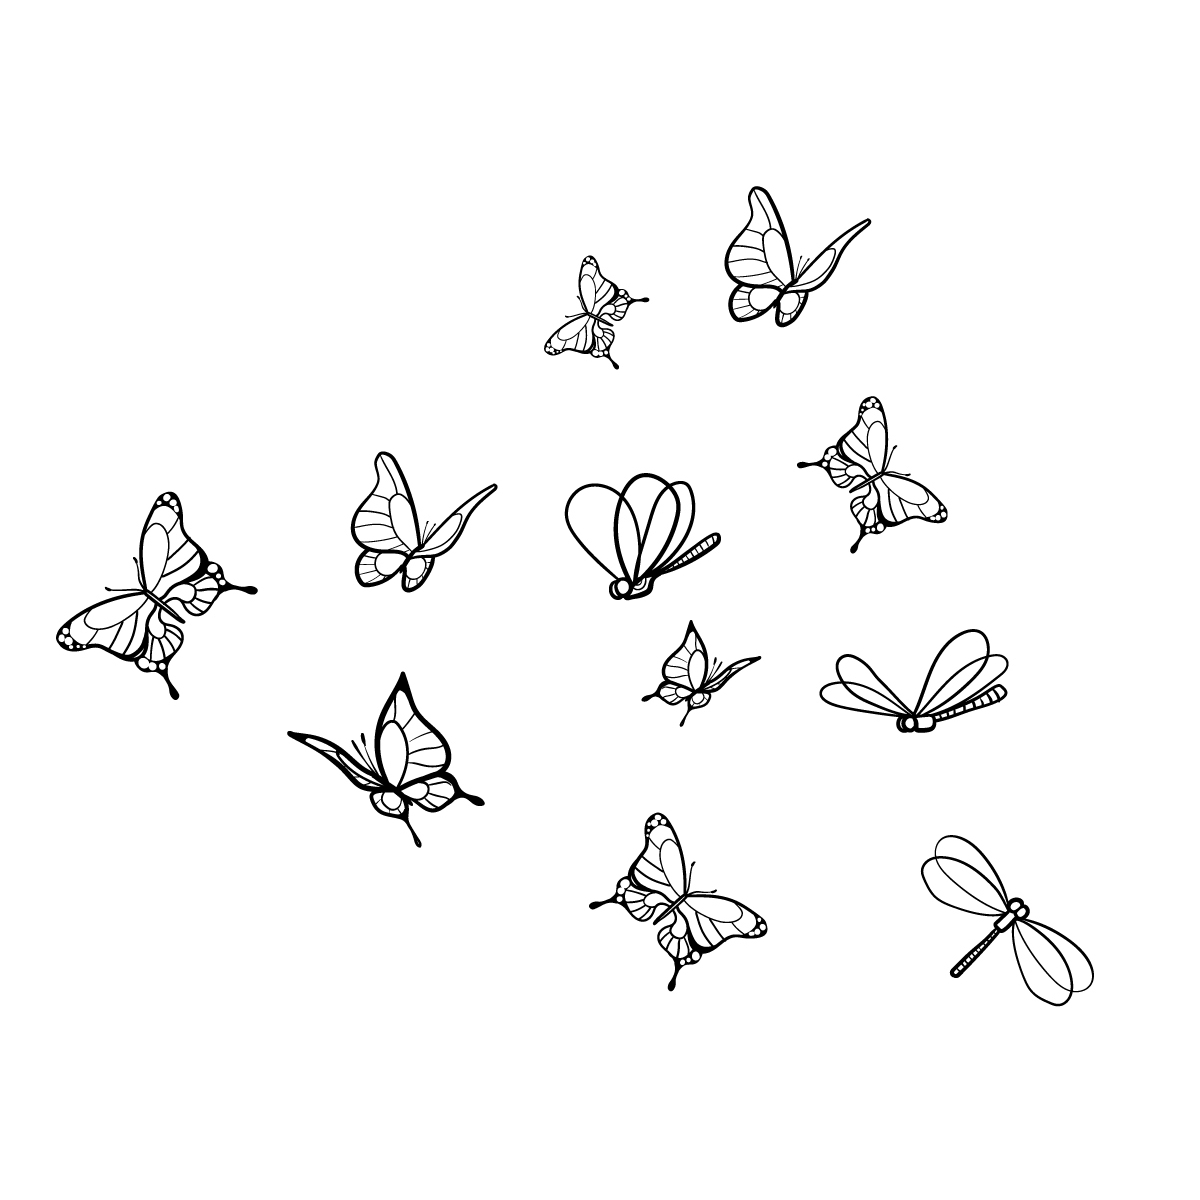 Vinilo decorativo infantil Mariposas y libélulas- Acte Deco